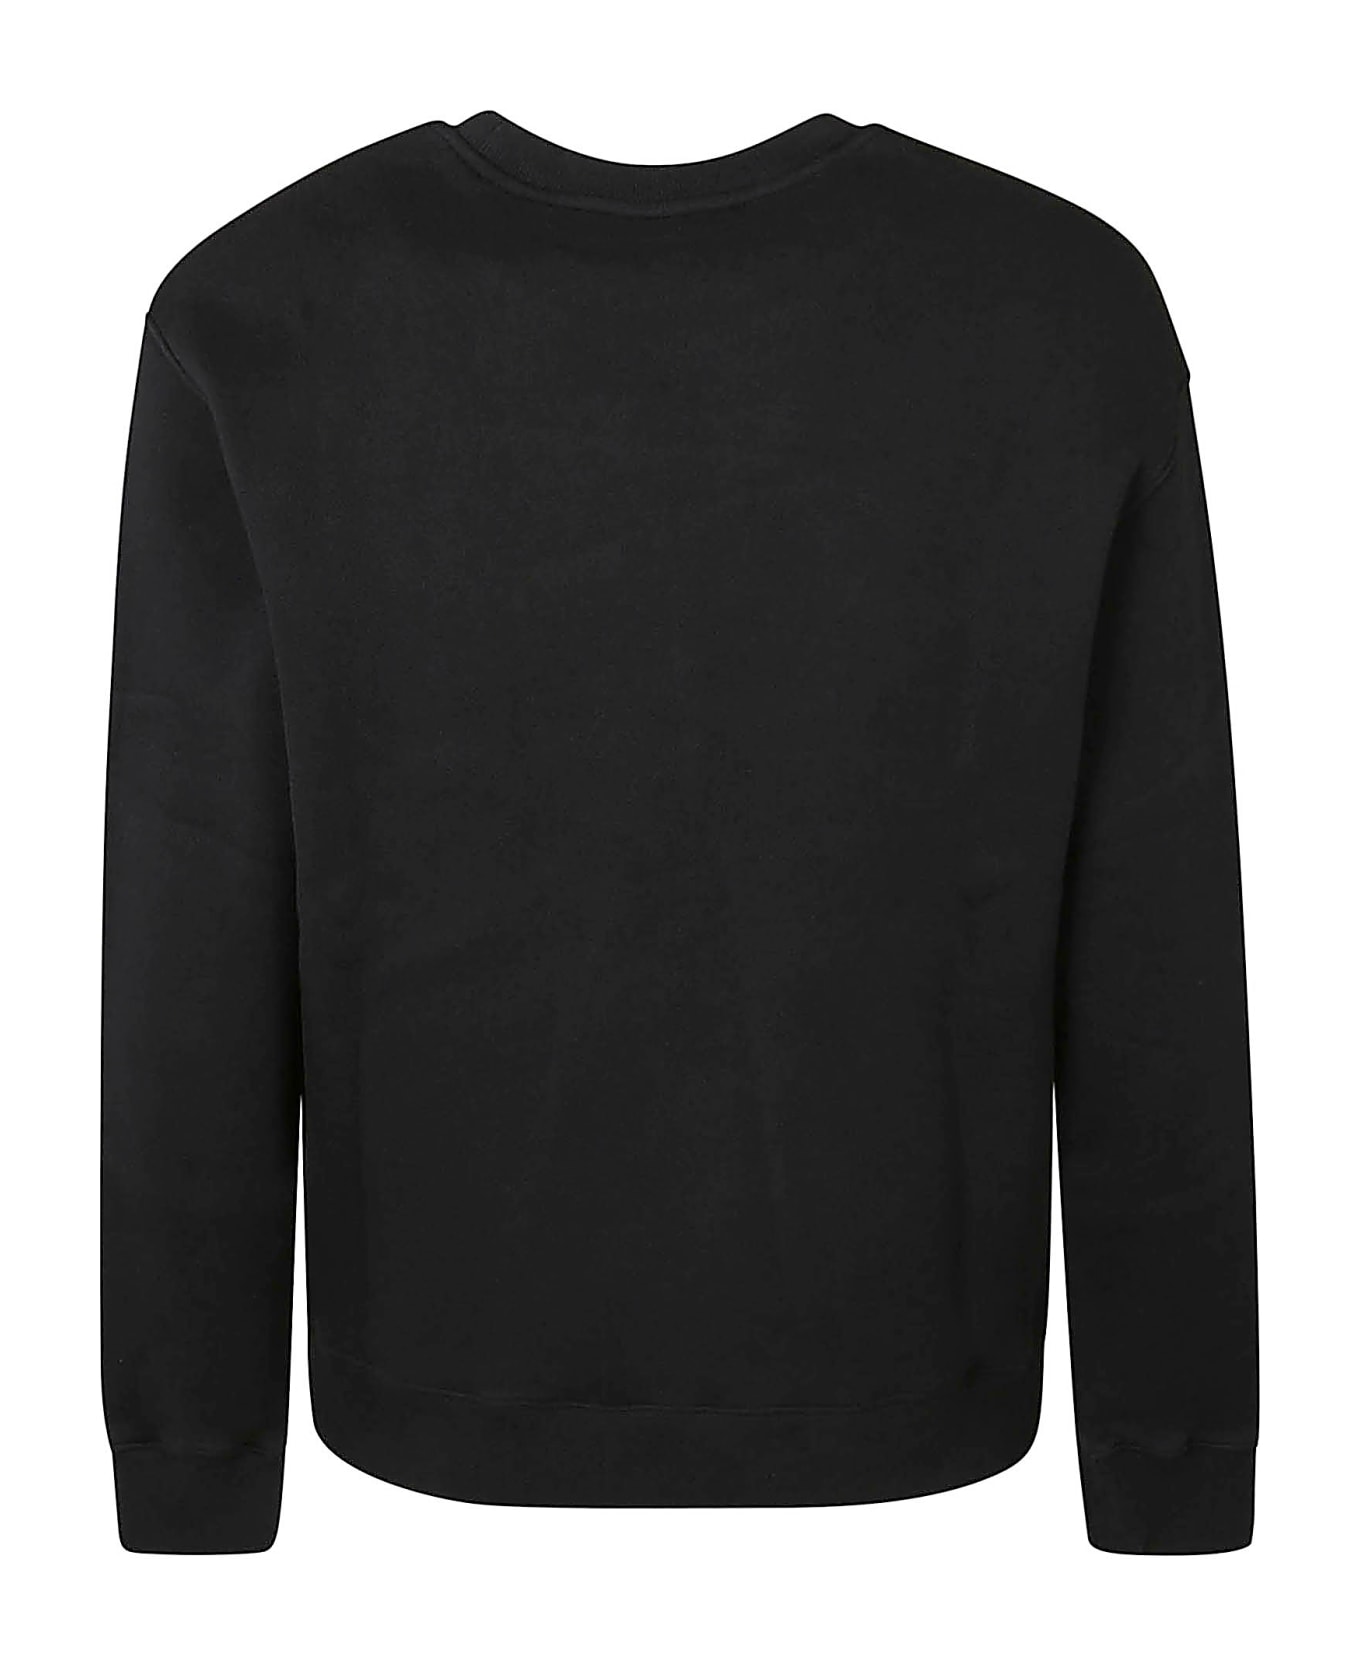 Maison Kitsuné Black Cotton Sweatshirt - Nero